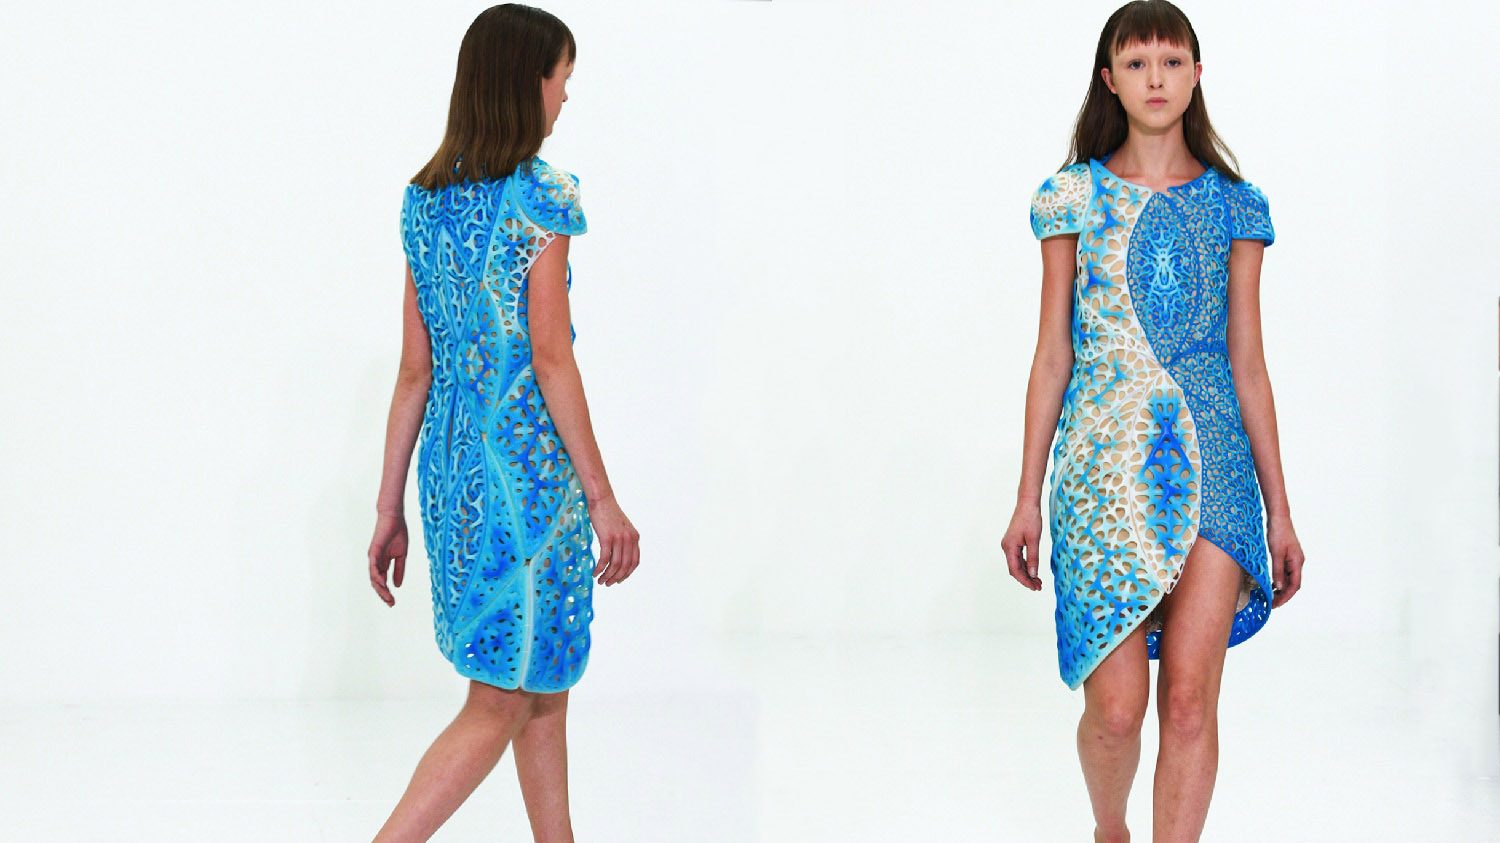 3D Printed Oscillation Dress Debuts at NY Fashion Week